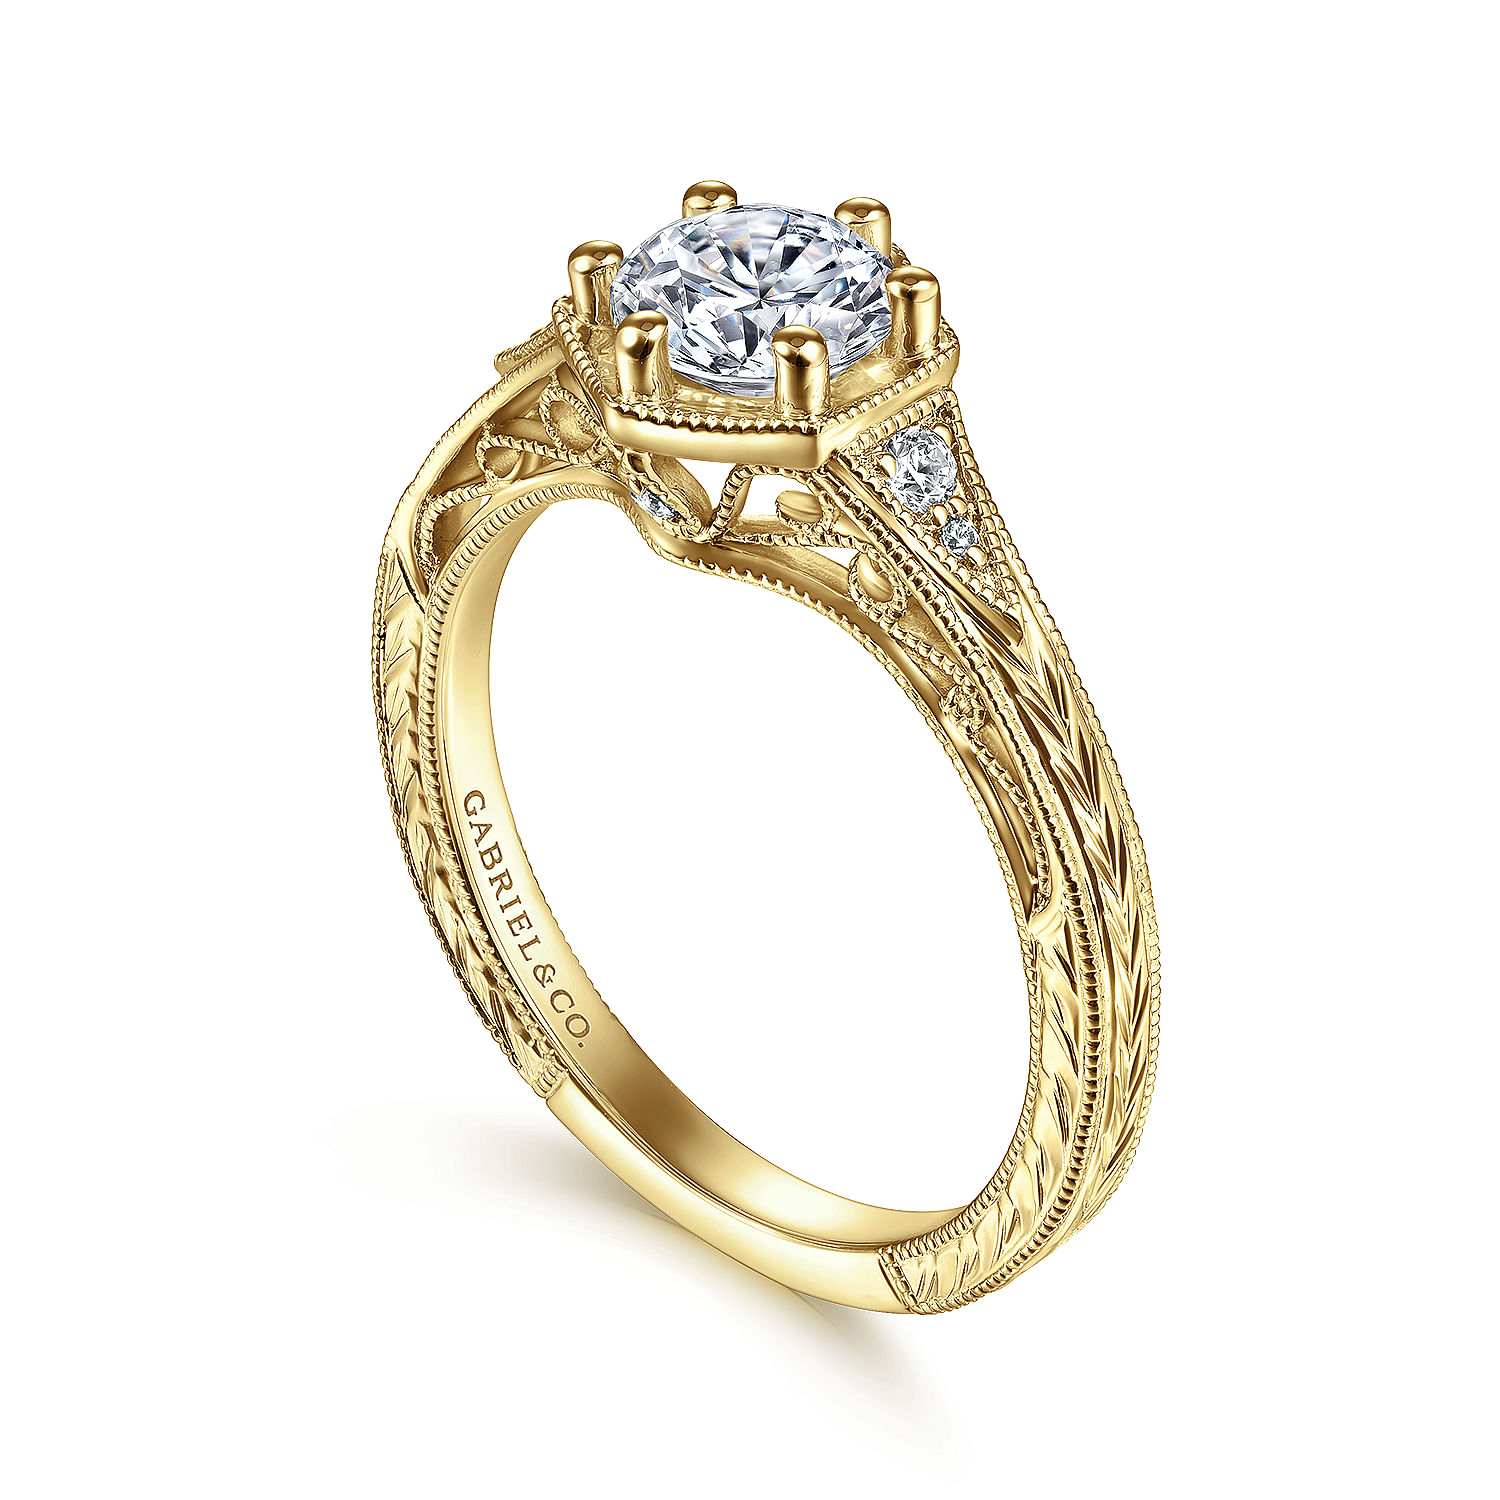 Priya - Vintage Inspired 14K Yellow Gold Round Diamond Engagement Ring - 0.06 ct - Shot 3